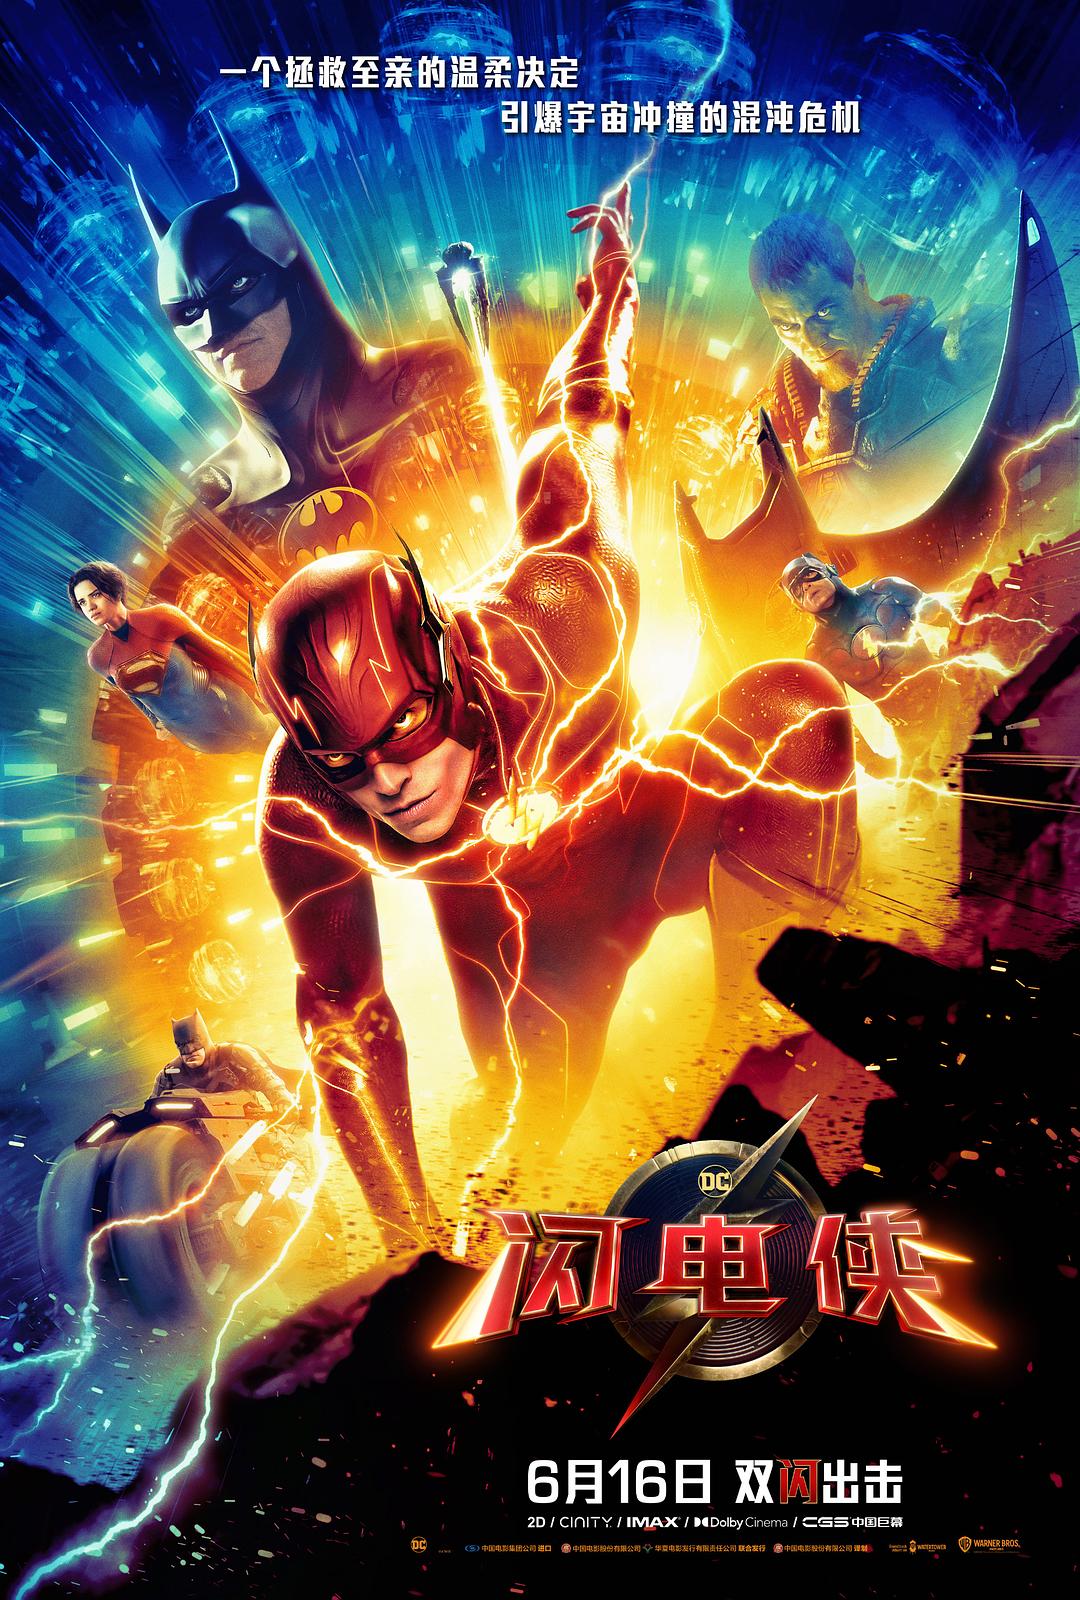 闪电侠.The Flash 2023 BluRay 1080p TrueHD 7.1 Atmos x264-MgB 11.87GB